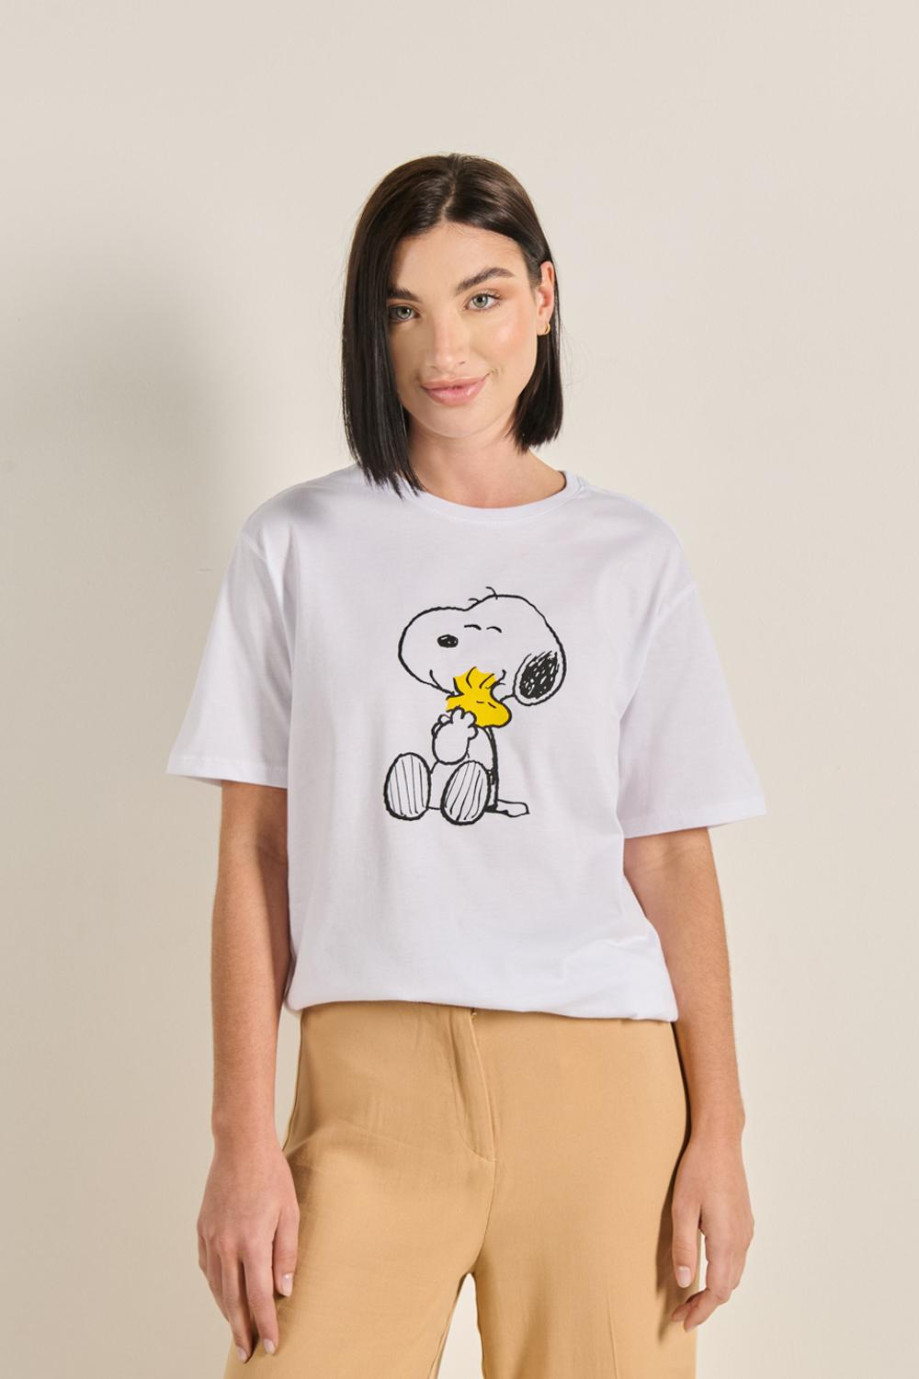 Camiseta unicolor para mujer manga corta estampada en frente de Snoopy.